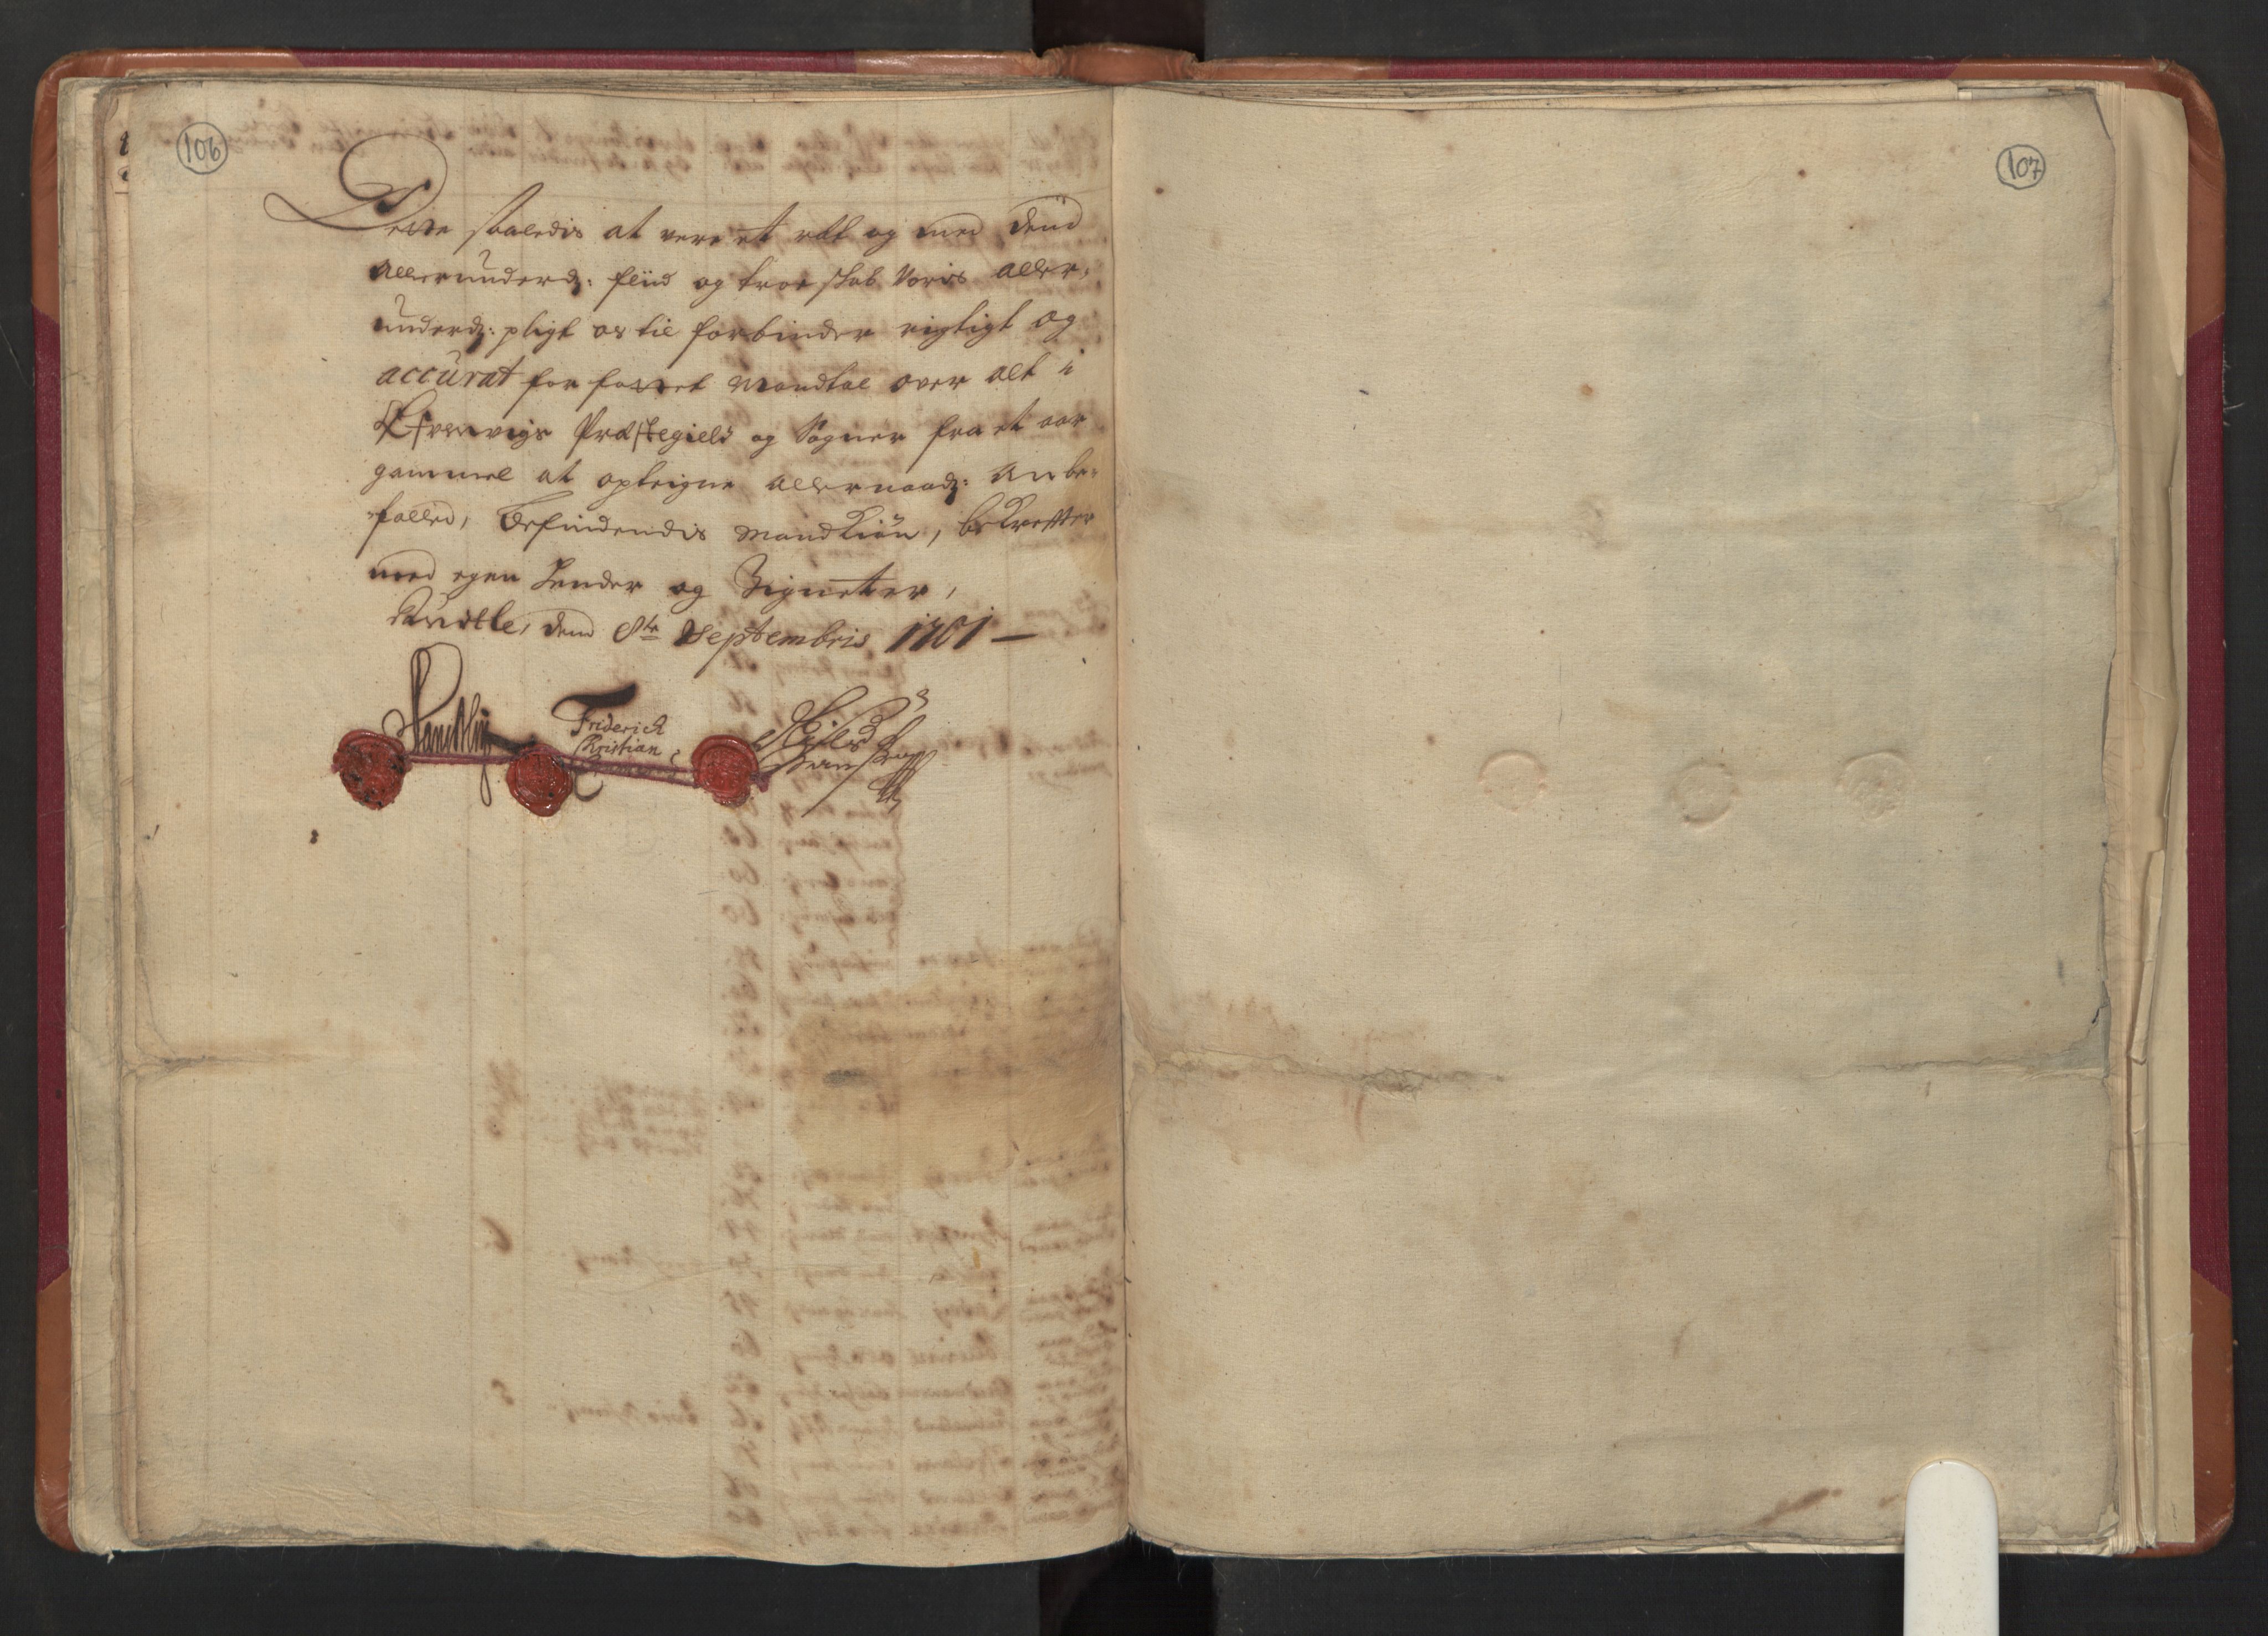 RA, Manntallet 1701, nr. 8: Ytre Sogn fogderi og Indre Sogn fogderi, 1701, s. 106-107